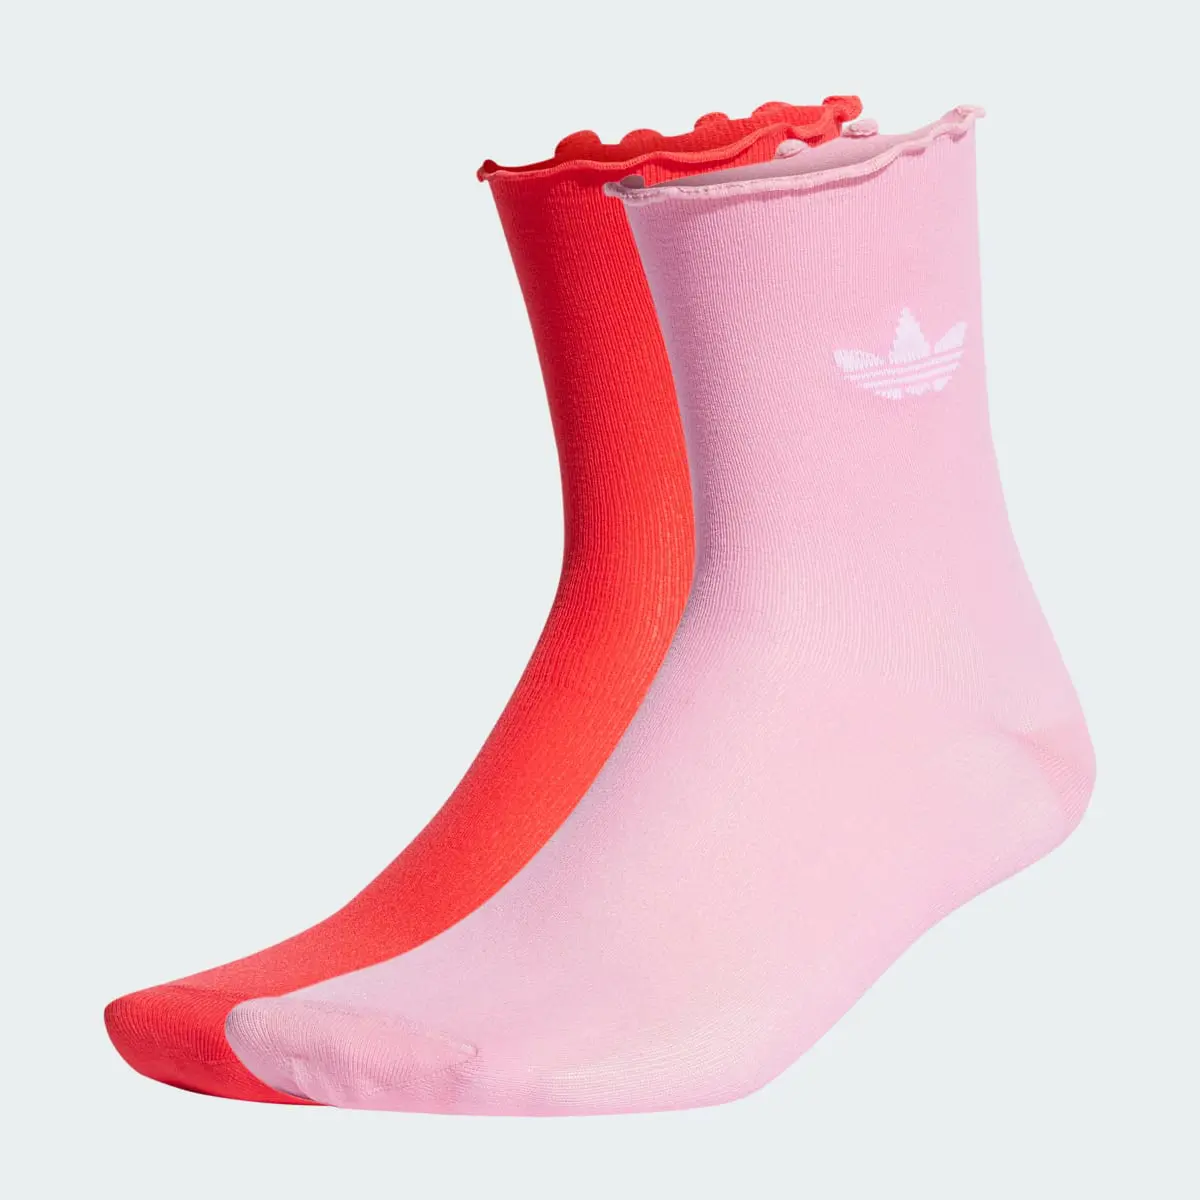 Adidas Semi-Sheer Ruffle Crew Socks 2 Pairs. 1